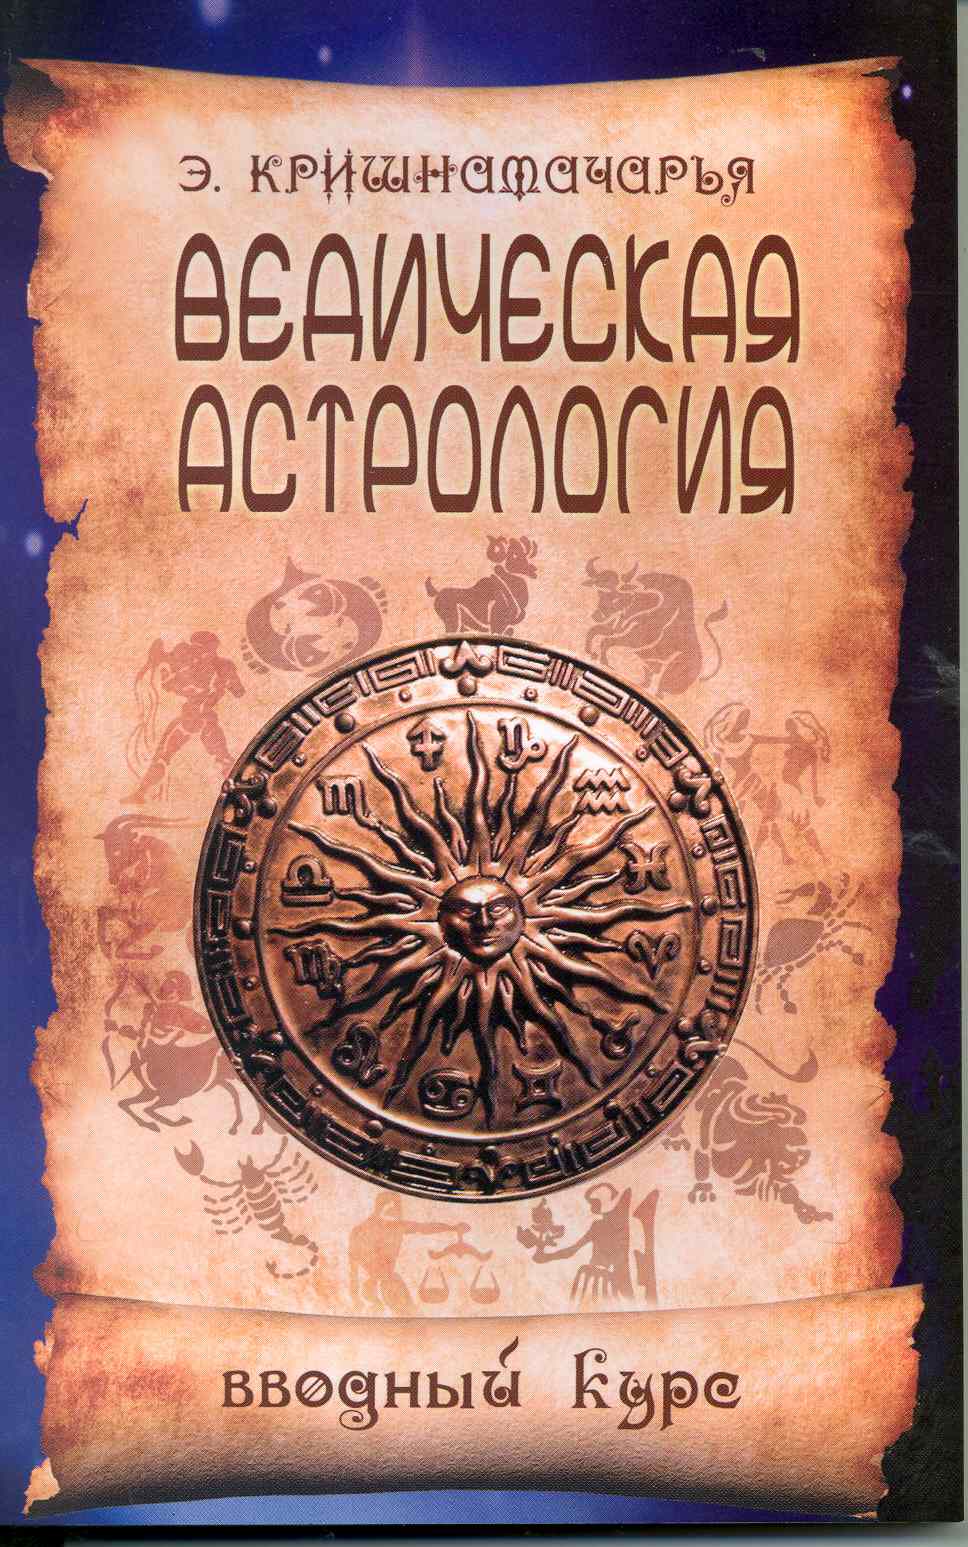 Кришнамачарья Эккирала Кулапати Ведическая астрология. Вводный курс. 5-е изд.